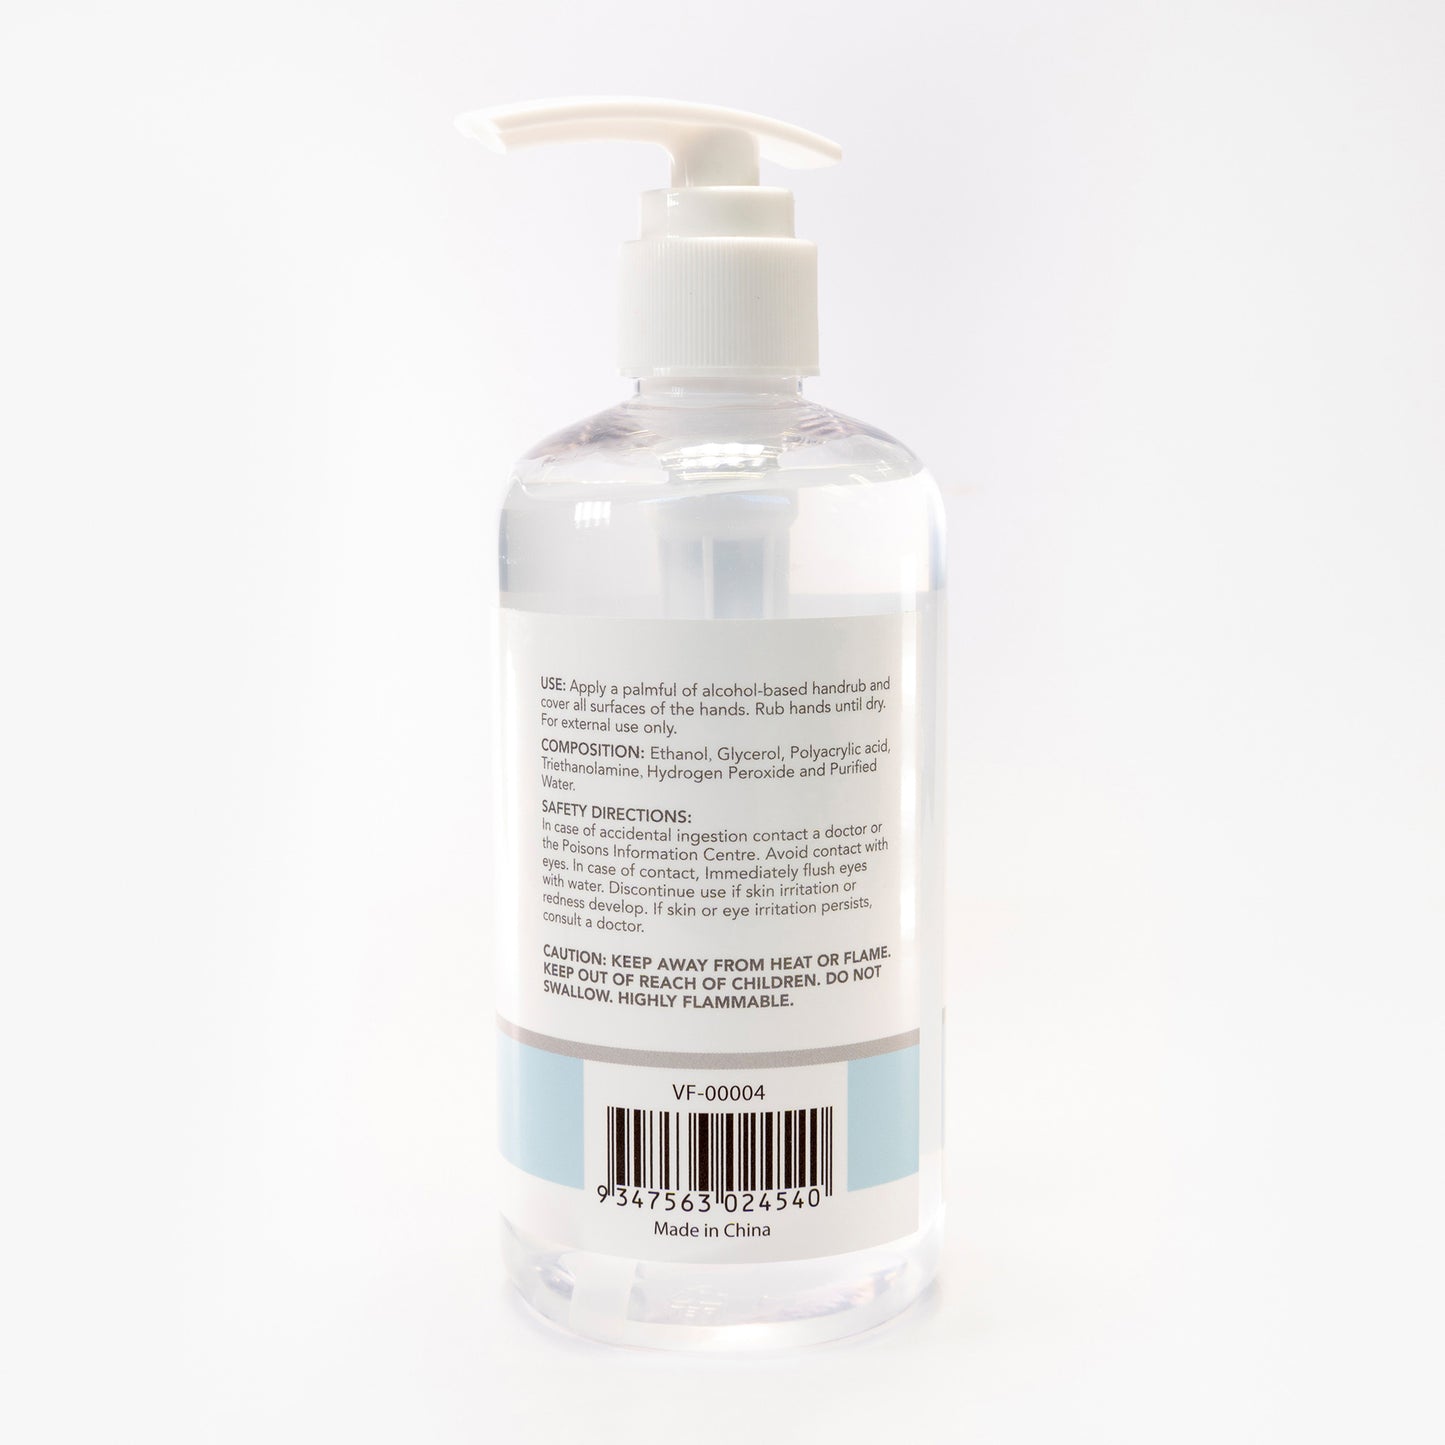 Virafree 250ml Hand Sanitizer Pump Bottle - 15-08099